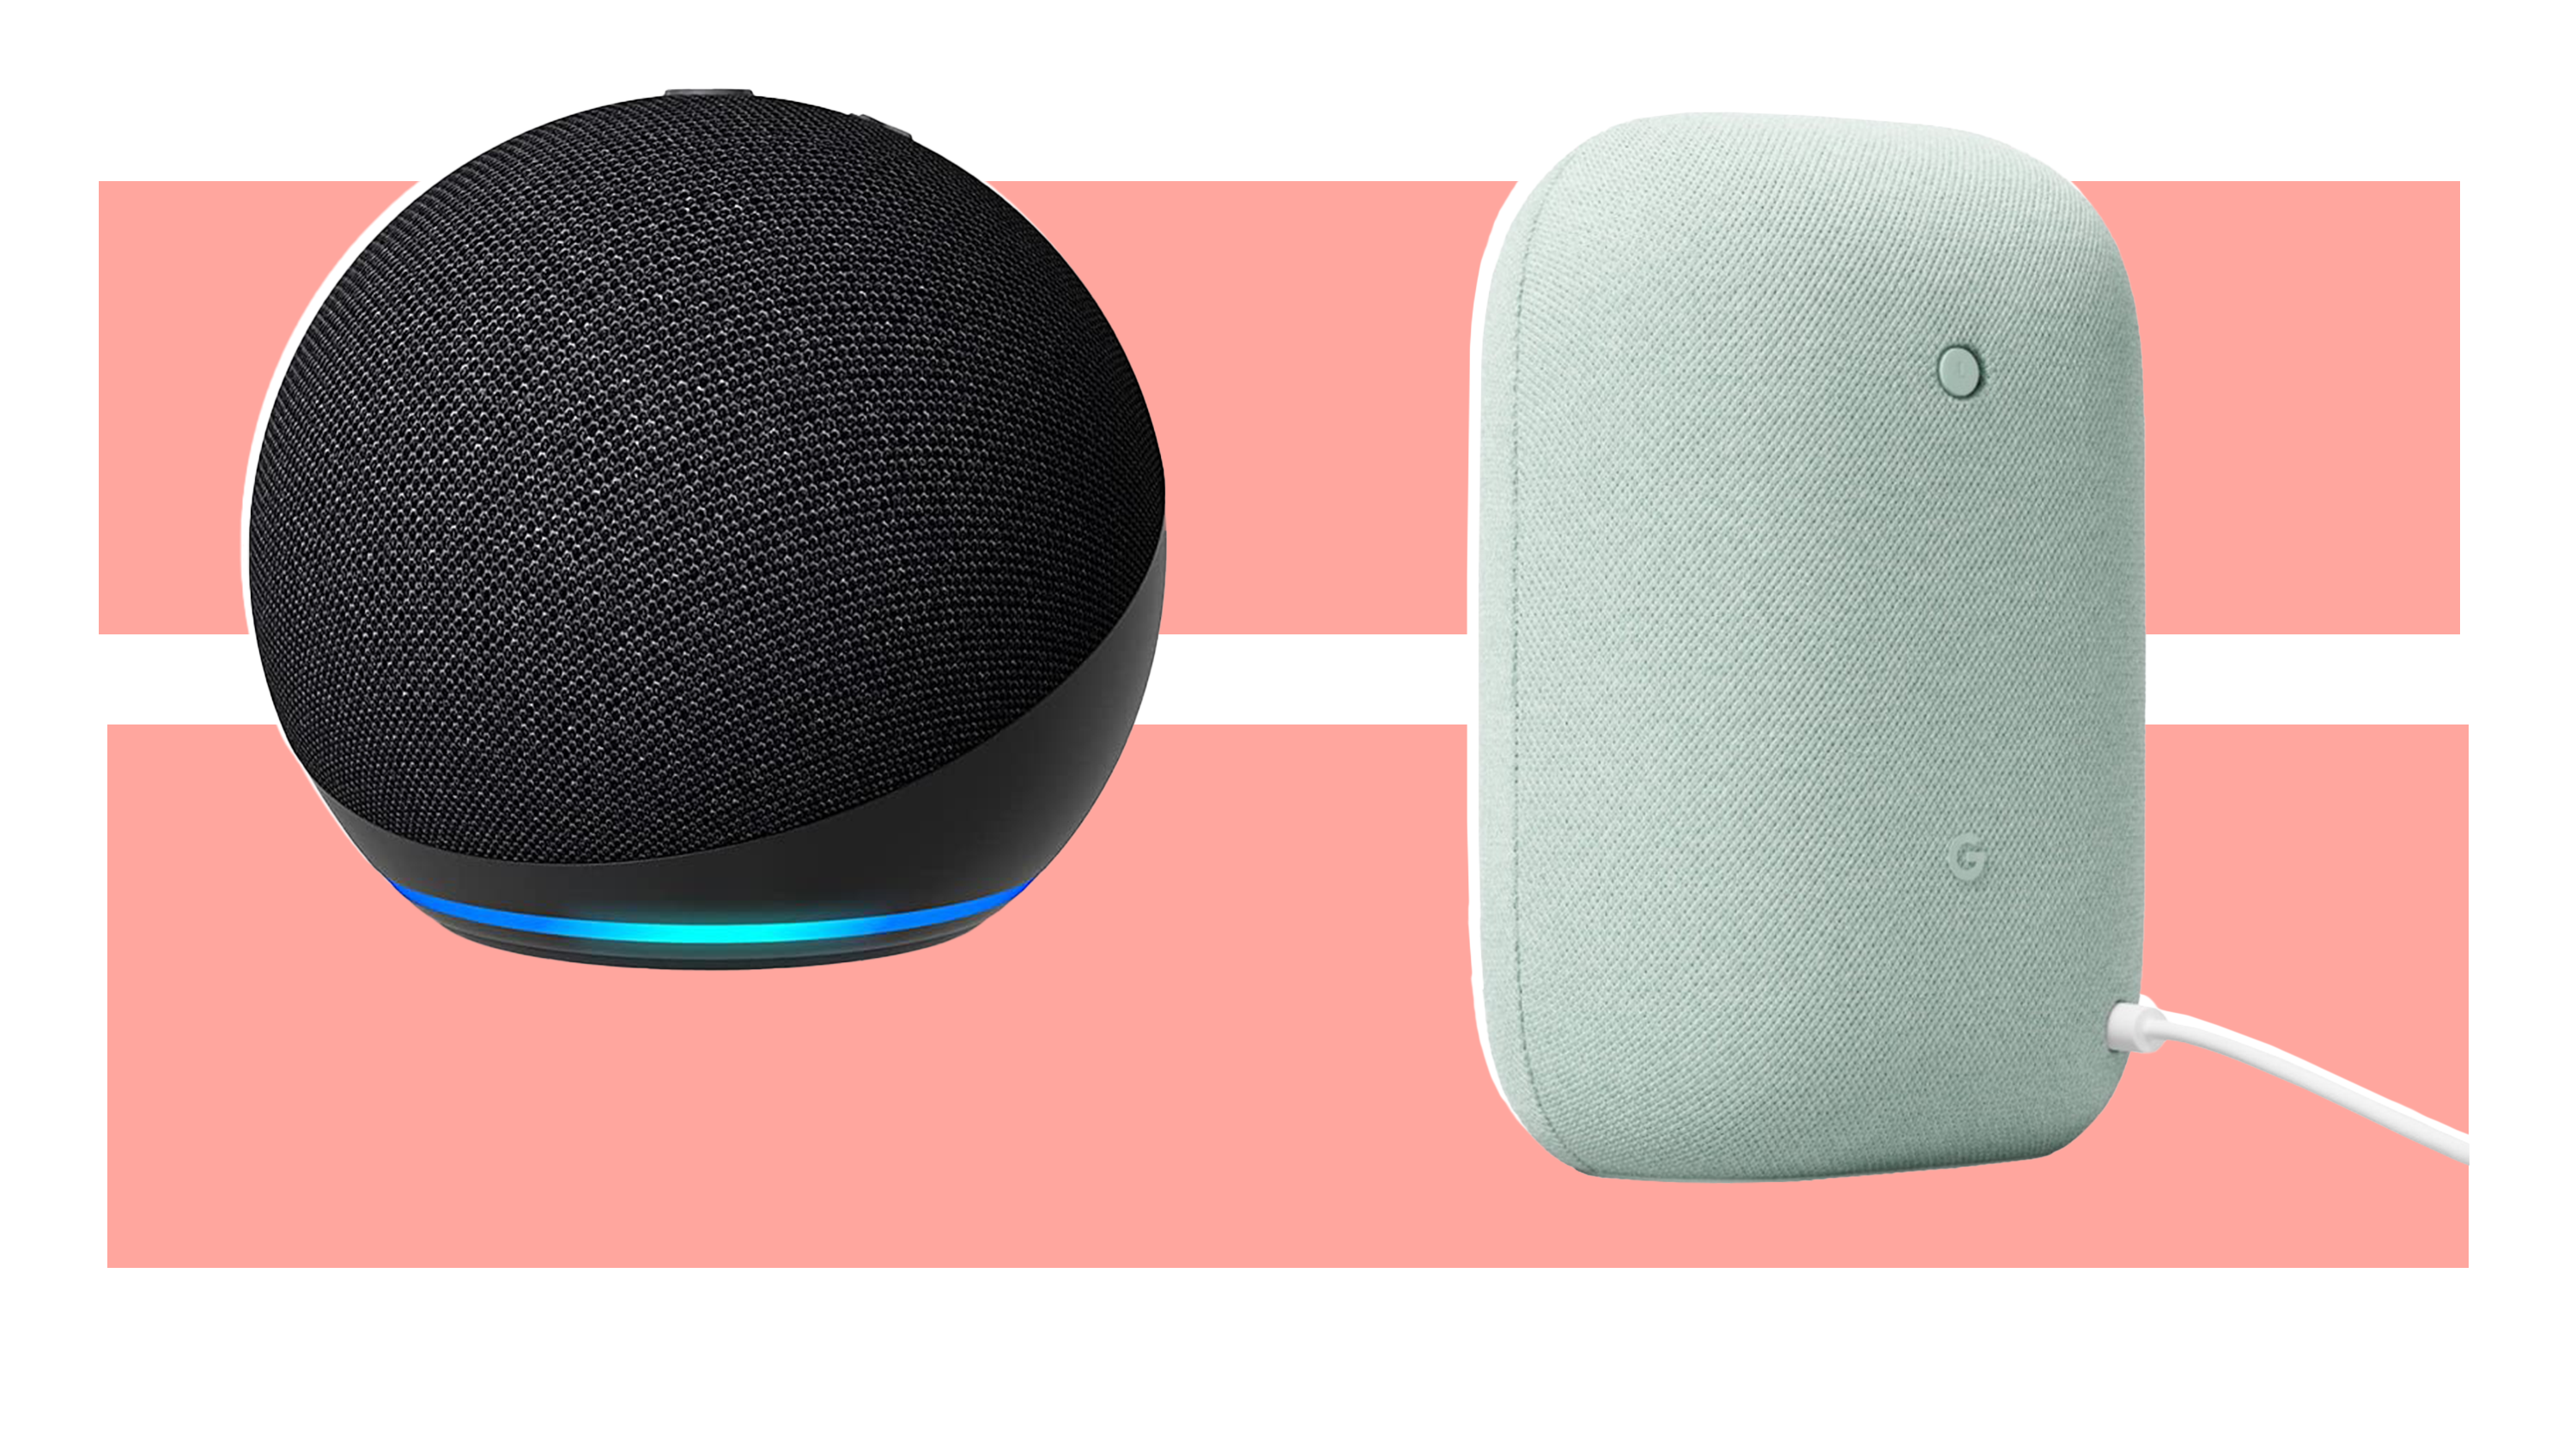 Inteligentní reproduktor Amazon Echo (4. gen) vedle zvukového reproduktoru Google Nest